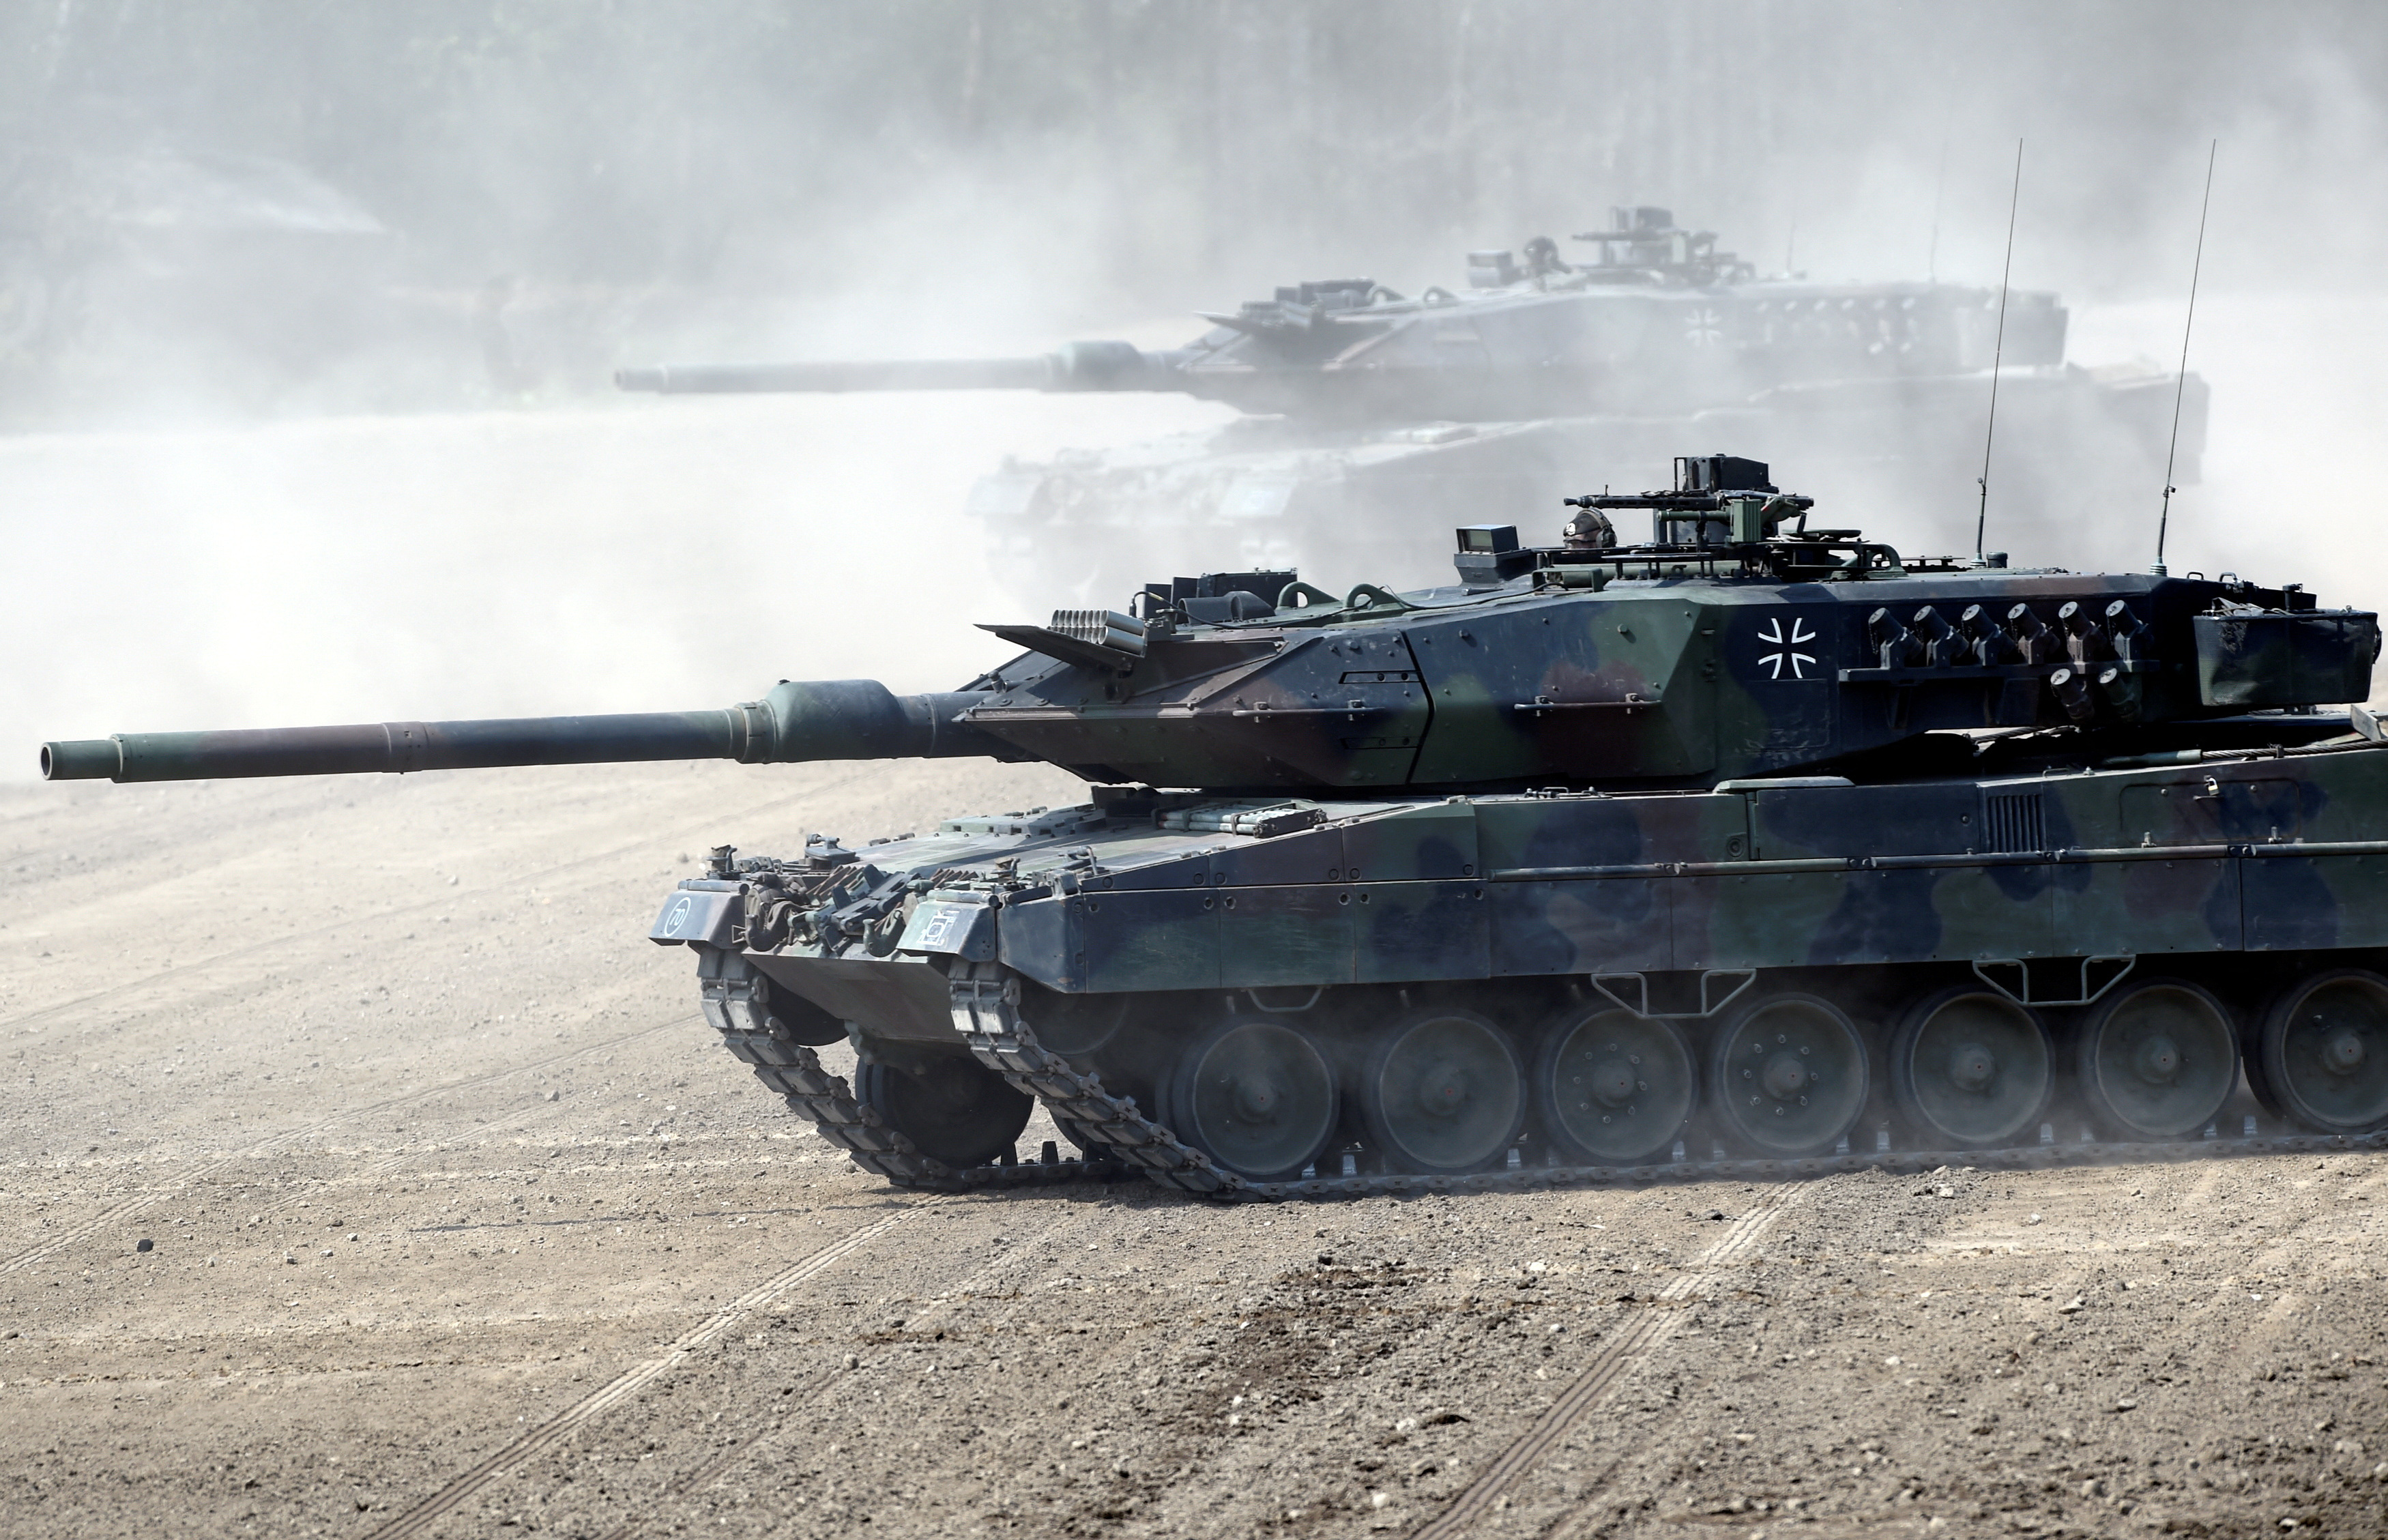 FOTO DE ARCHIVO: Tanques Leopard 2 toman posición durante una visita de la entonces canciller alemana Angela Merkel a la nueva fuerza de punta de lanza de la OTAN "VJTF 2019" en Munster, Alemania 20 de mayo de 2019 (Reuters)